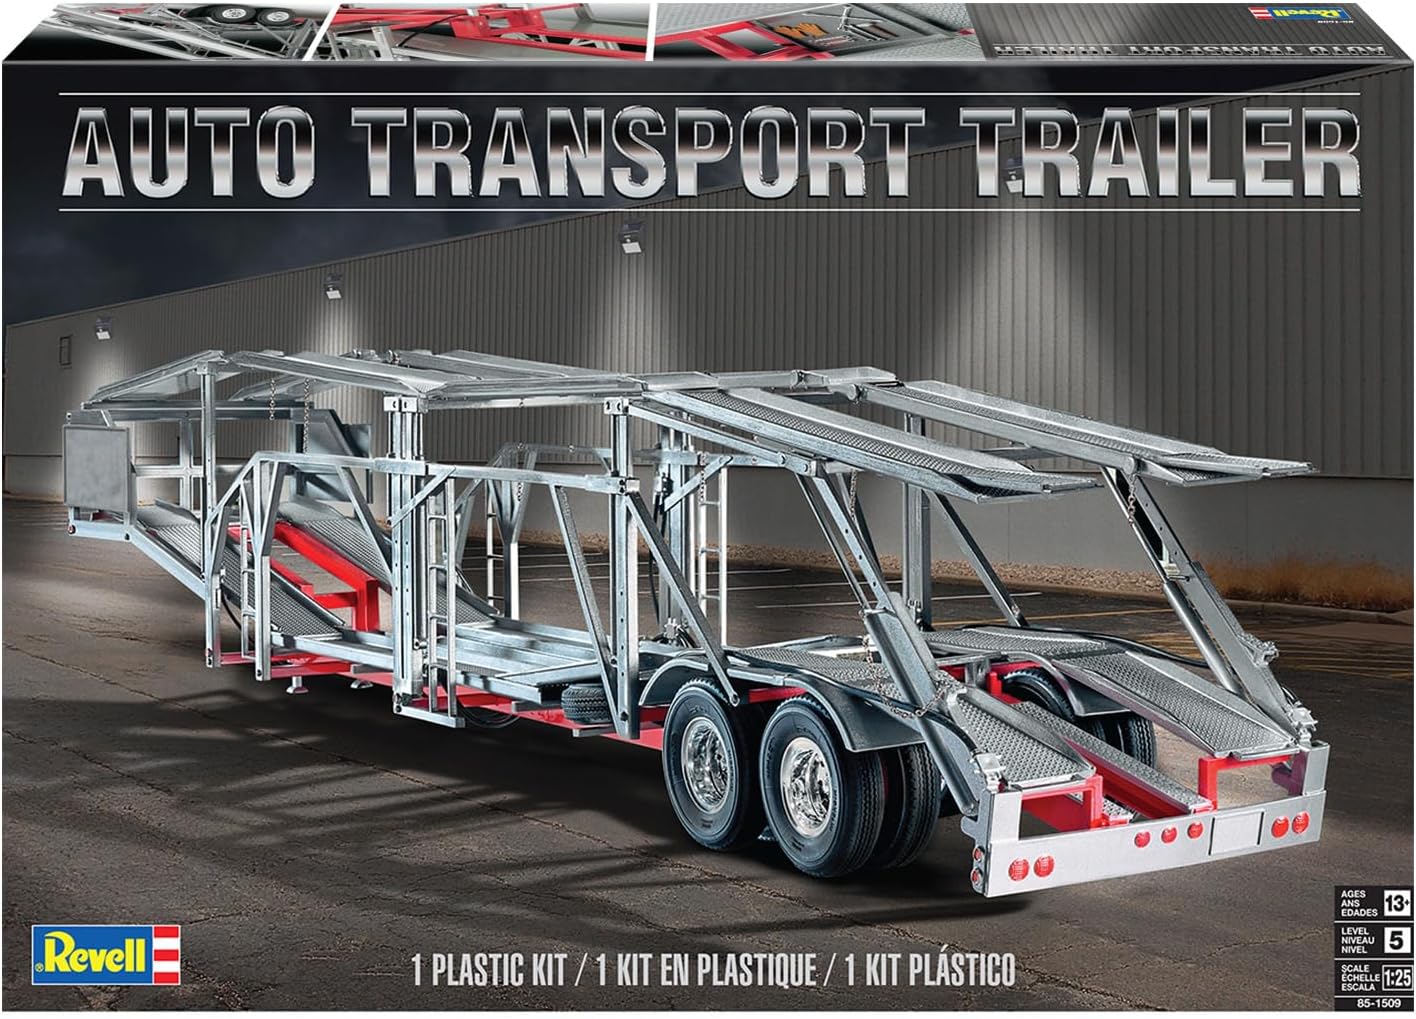 Revell 85-1509 Auto Transport Trailer 1/25 Scale Model Kit